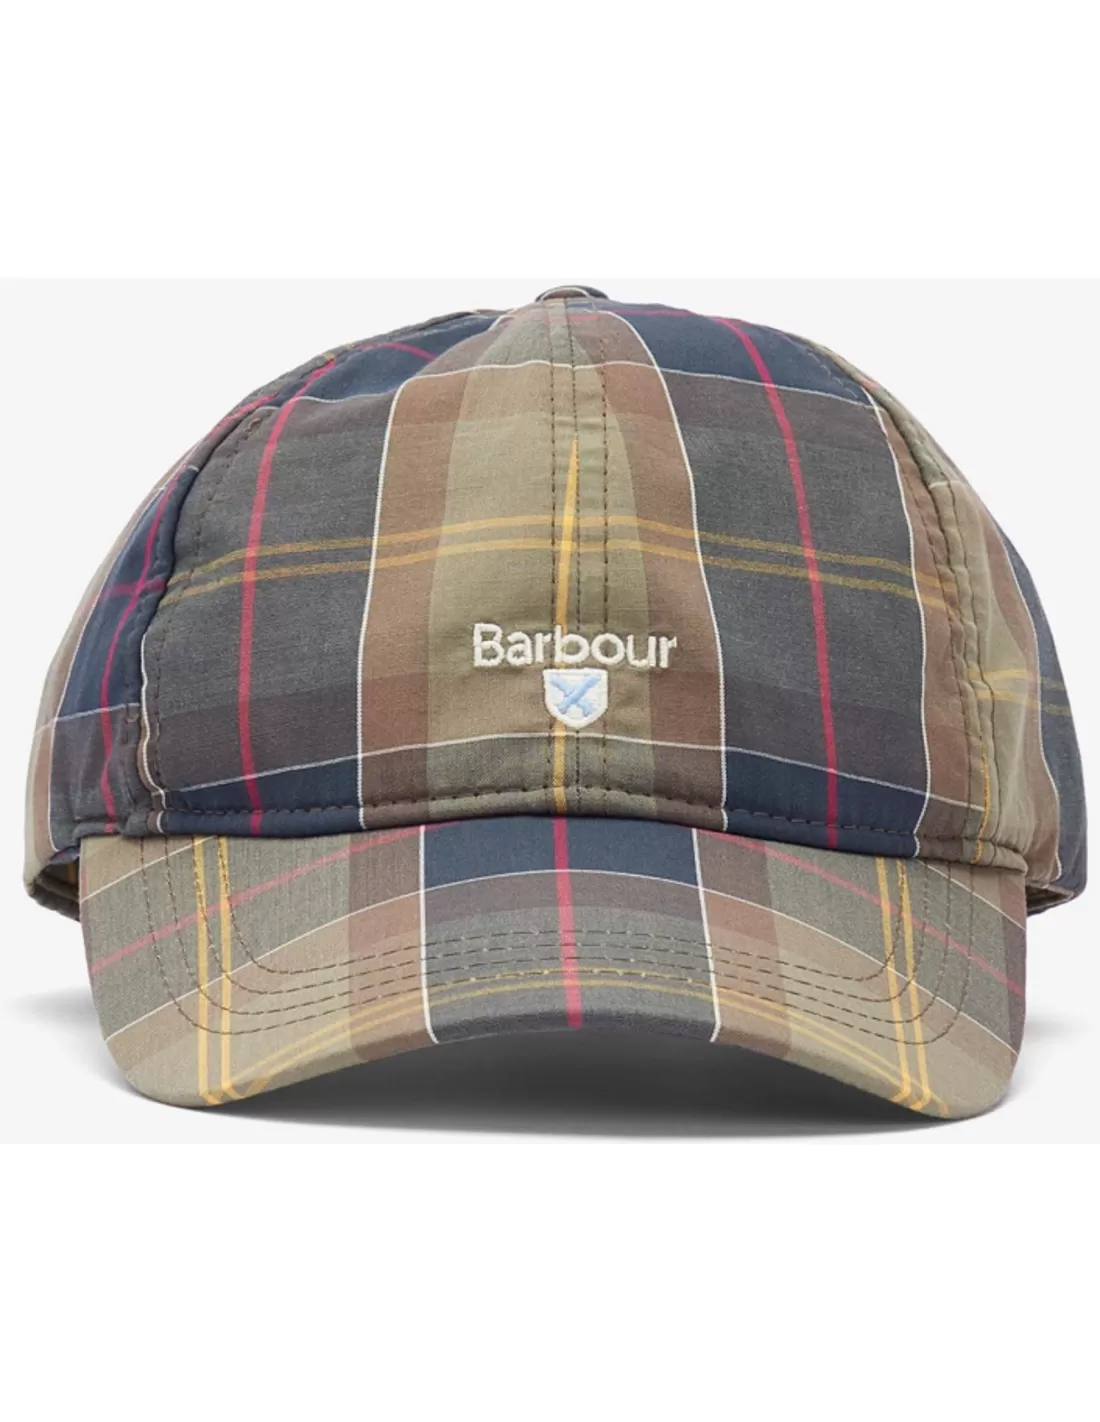 Barbour Tartan Sports Cap (Maat - OS, Kleur - Classic tartan)